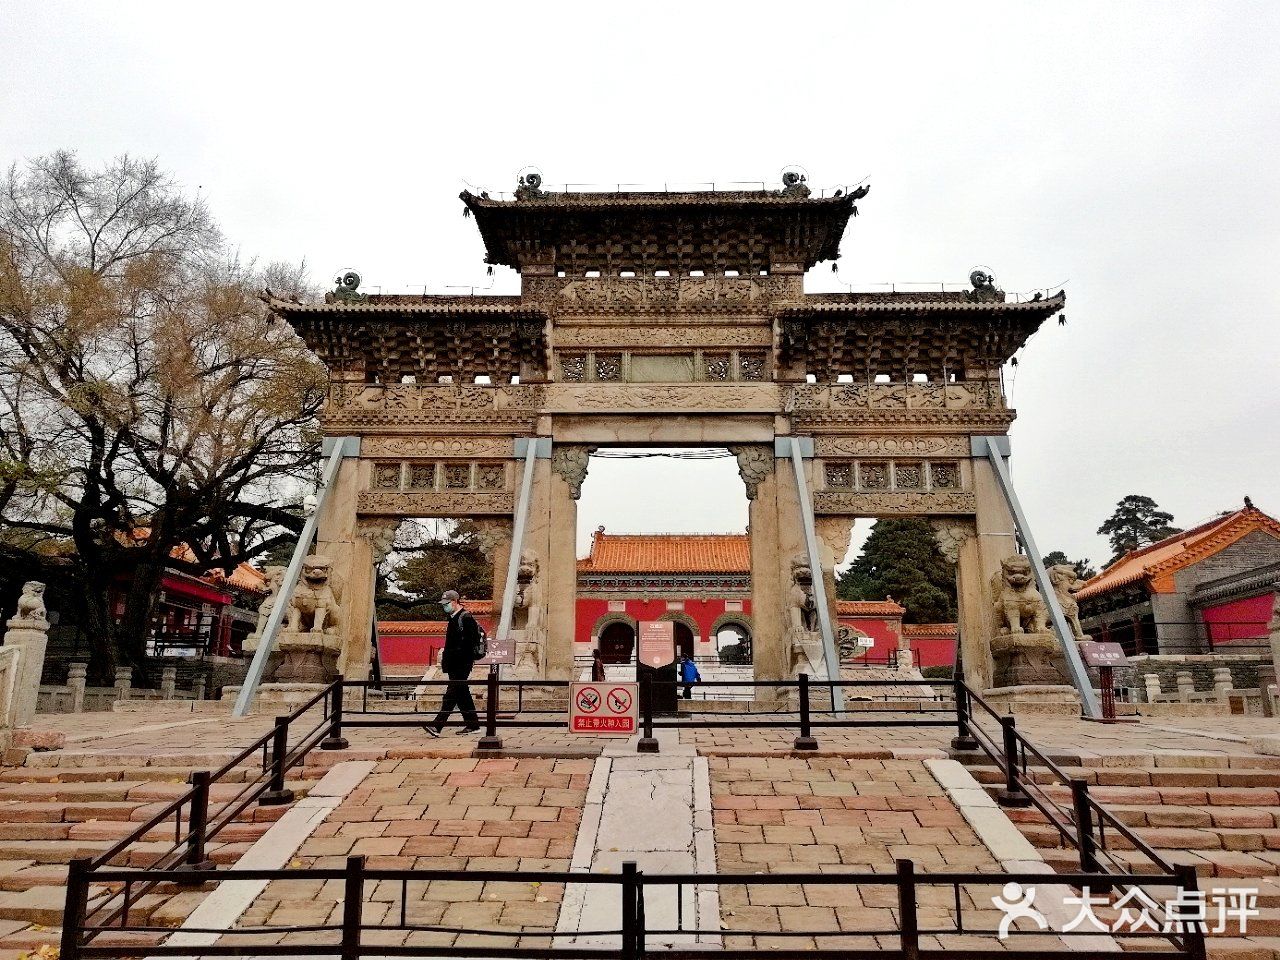 这座石牌坊是位于北陵公园内,清昭陵门前的一座仿木架的大型石雕牌坊